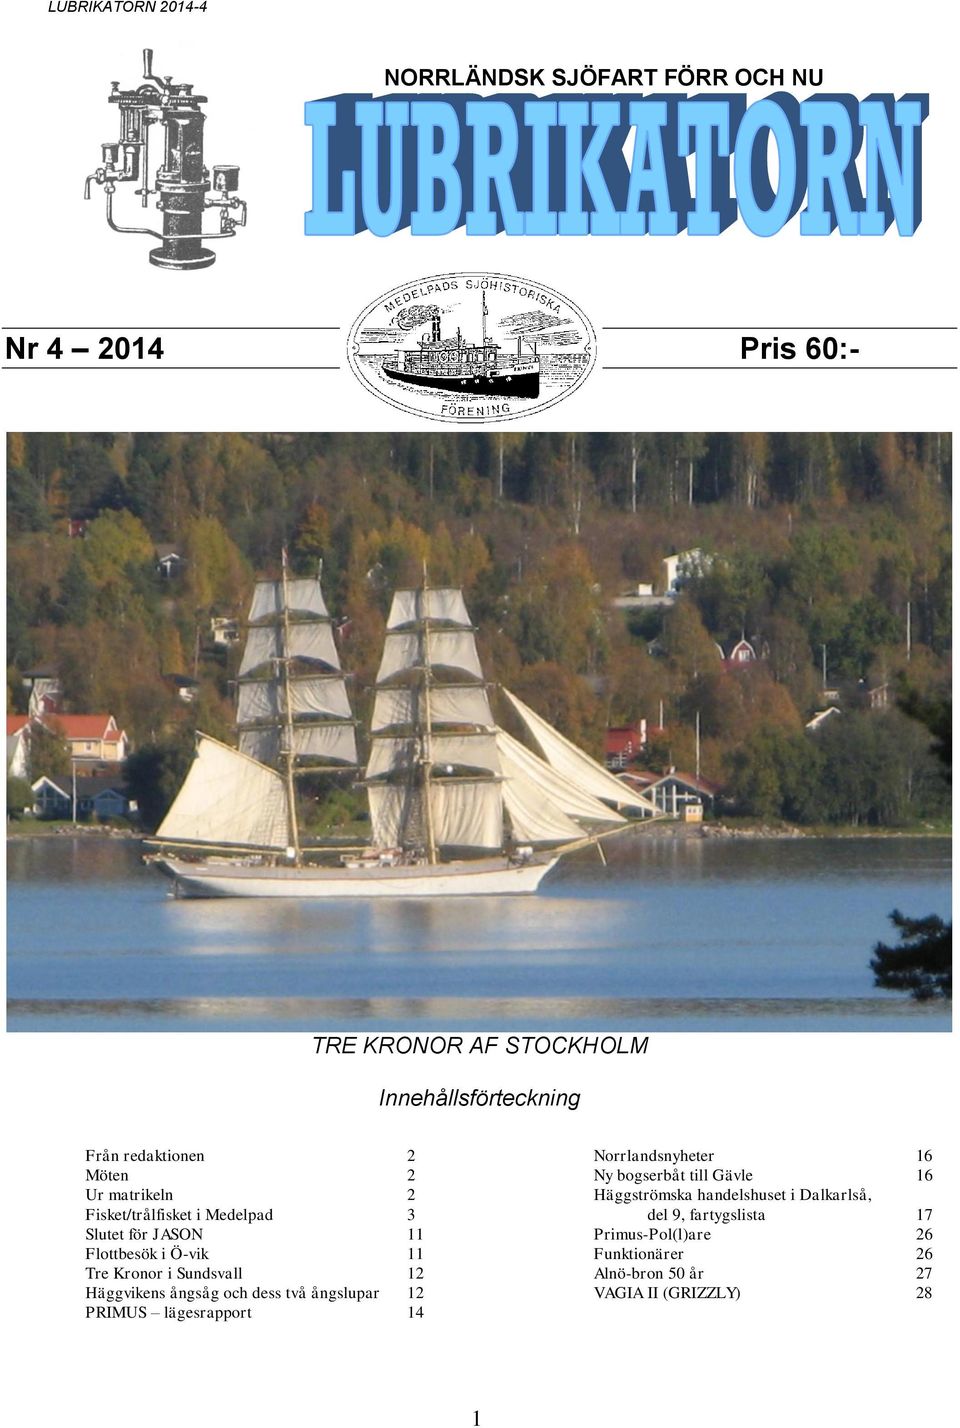 Häggvikens ångsåg och dess två ångslupar 12 PRIMUS lägesrapport 14 Norrlandsnyheter 16 Ny bogserbåt till Gävle 16